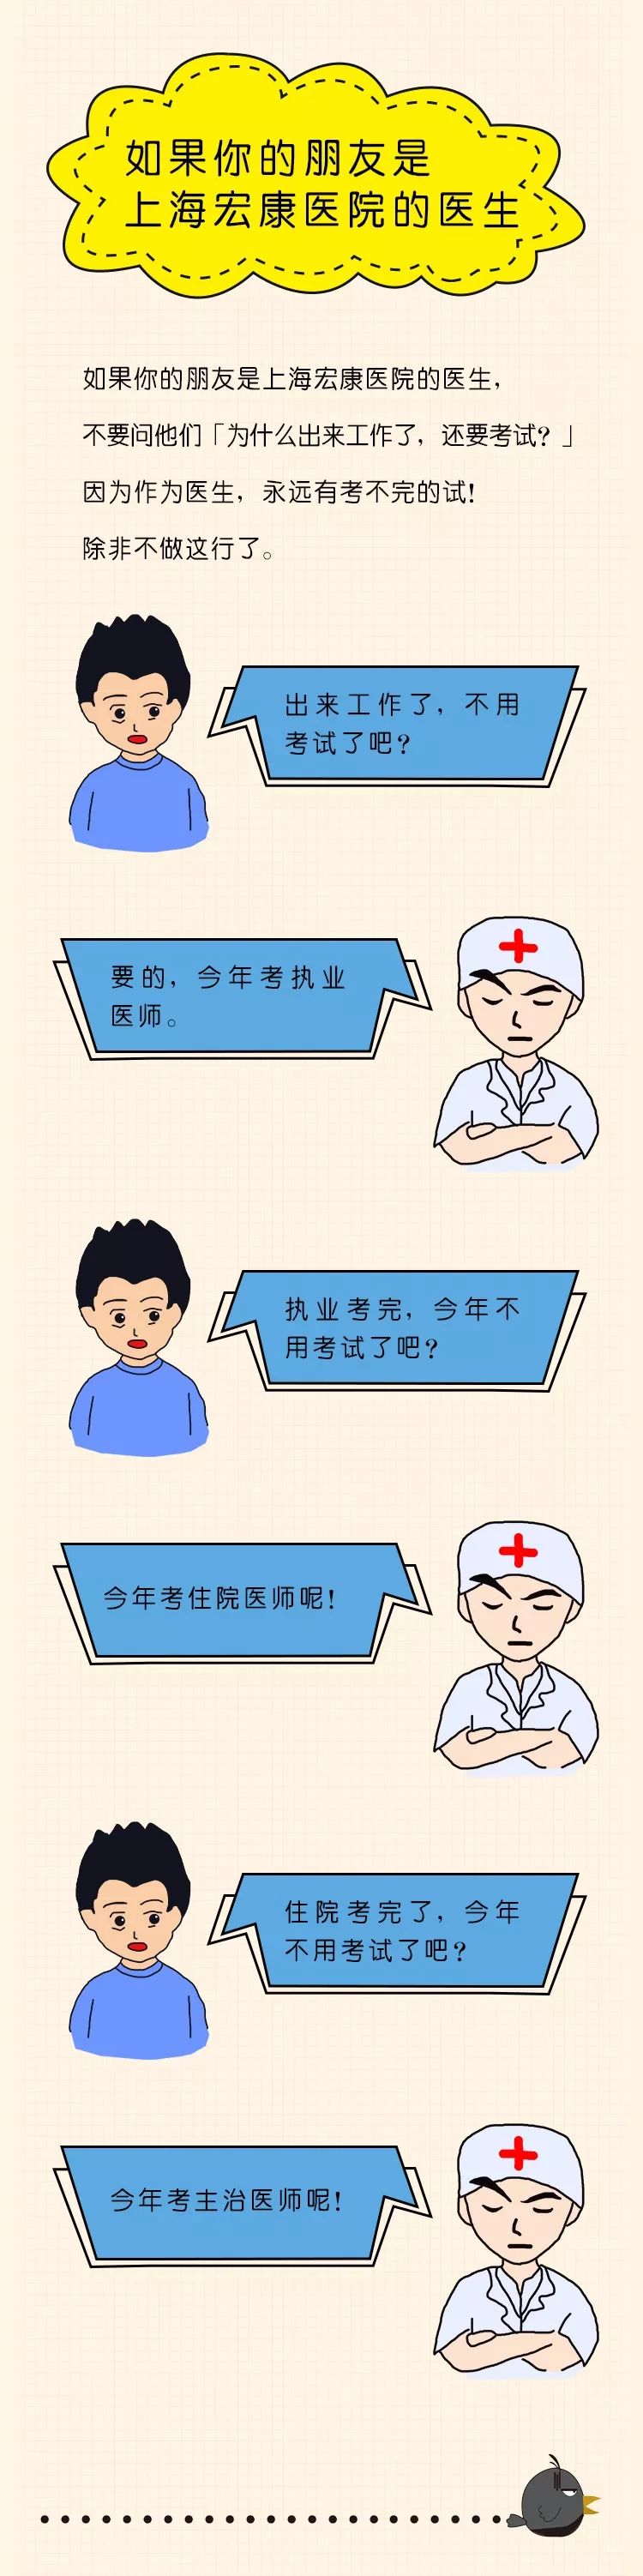 如果你的朋友是上海宏康医院的医生